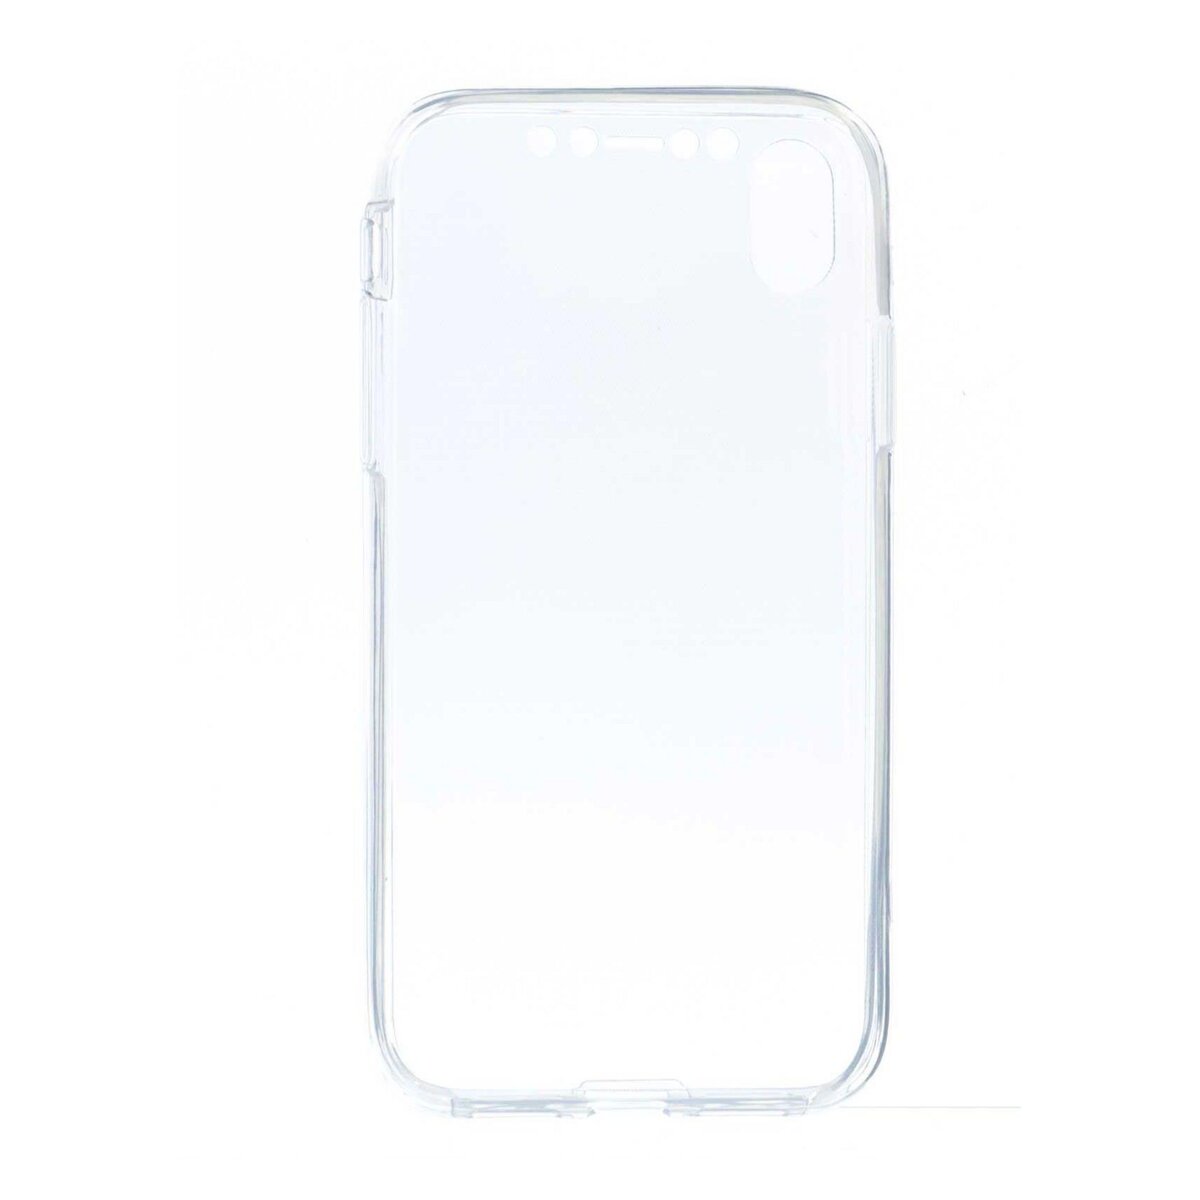 amahousse Coque protection intégrale 360° iPhone XR transparente souple